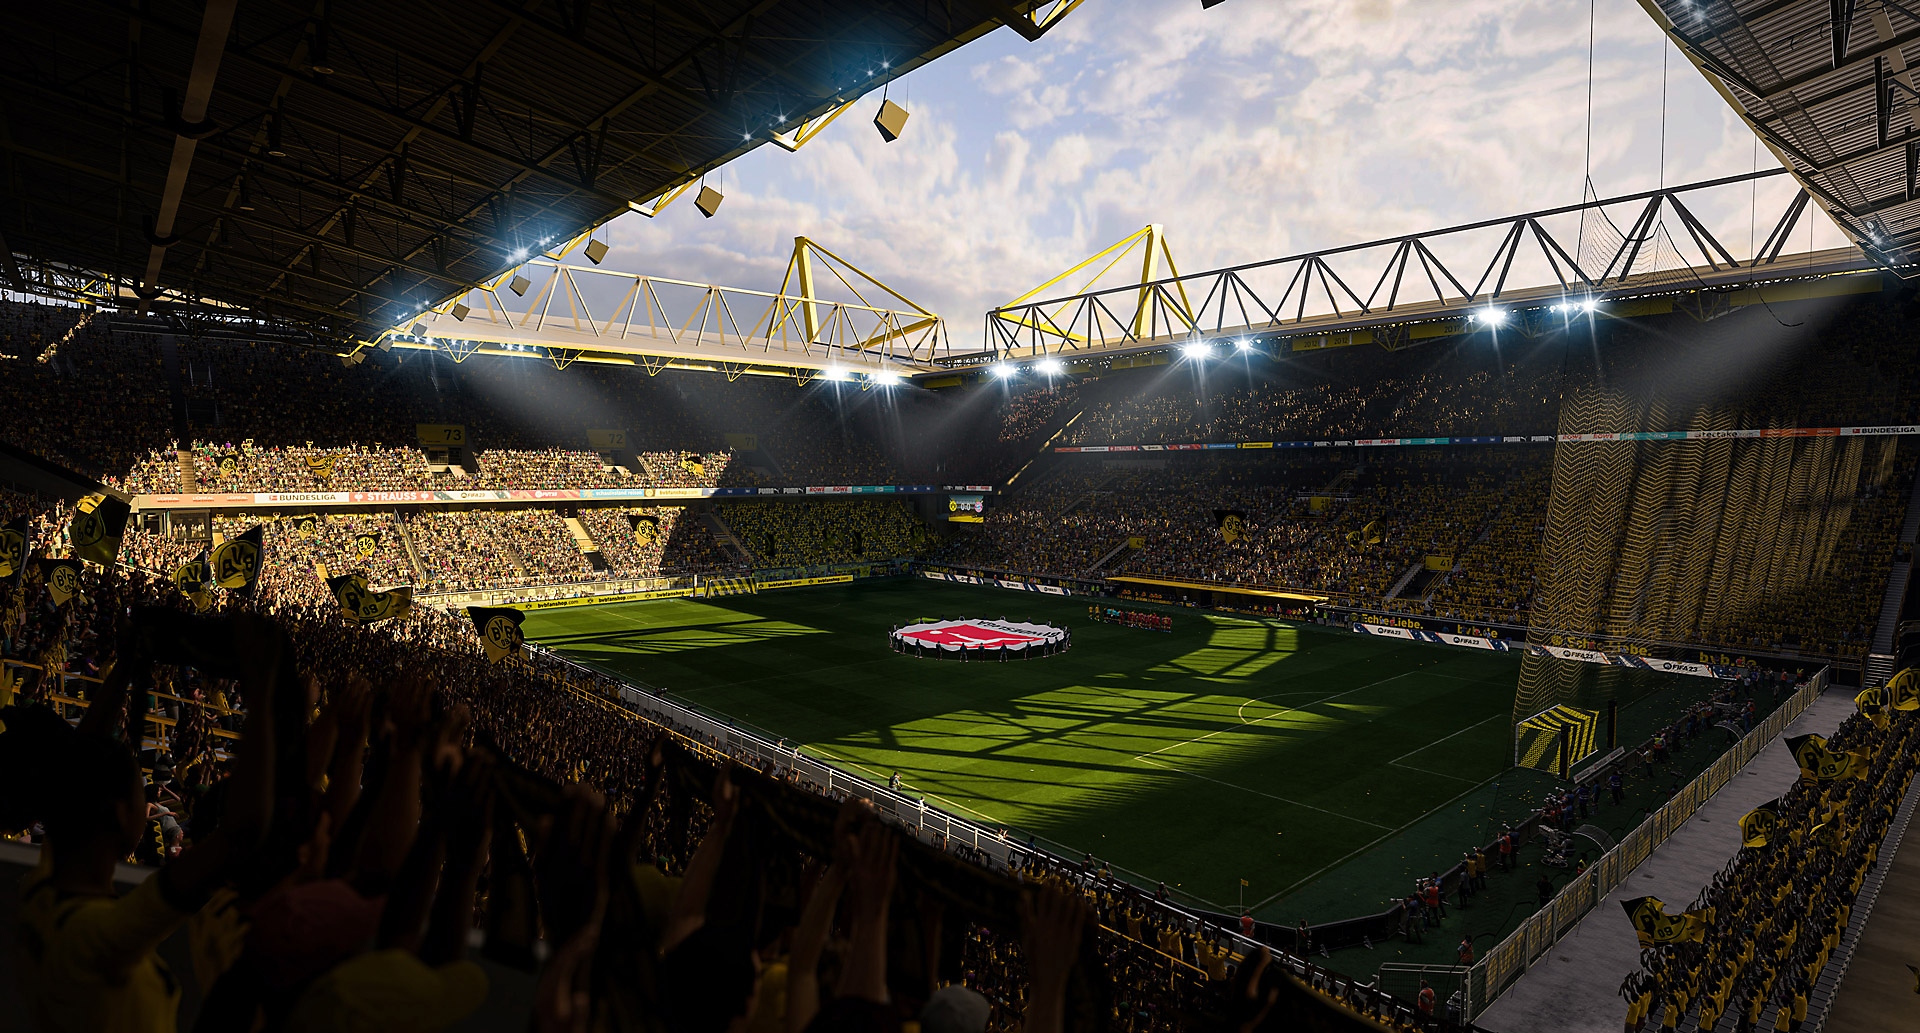 EA Sports FIFA 23 -kuvakaappaus jalkapallostadionista auringonvalossa